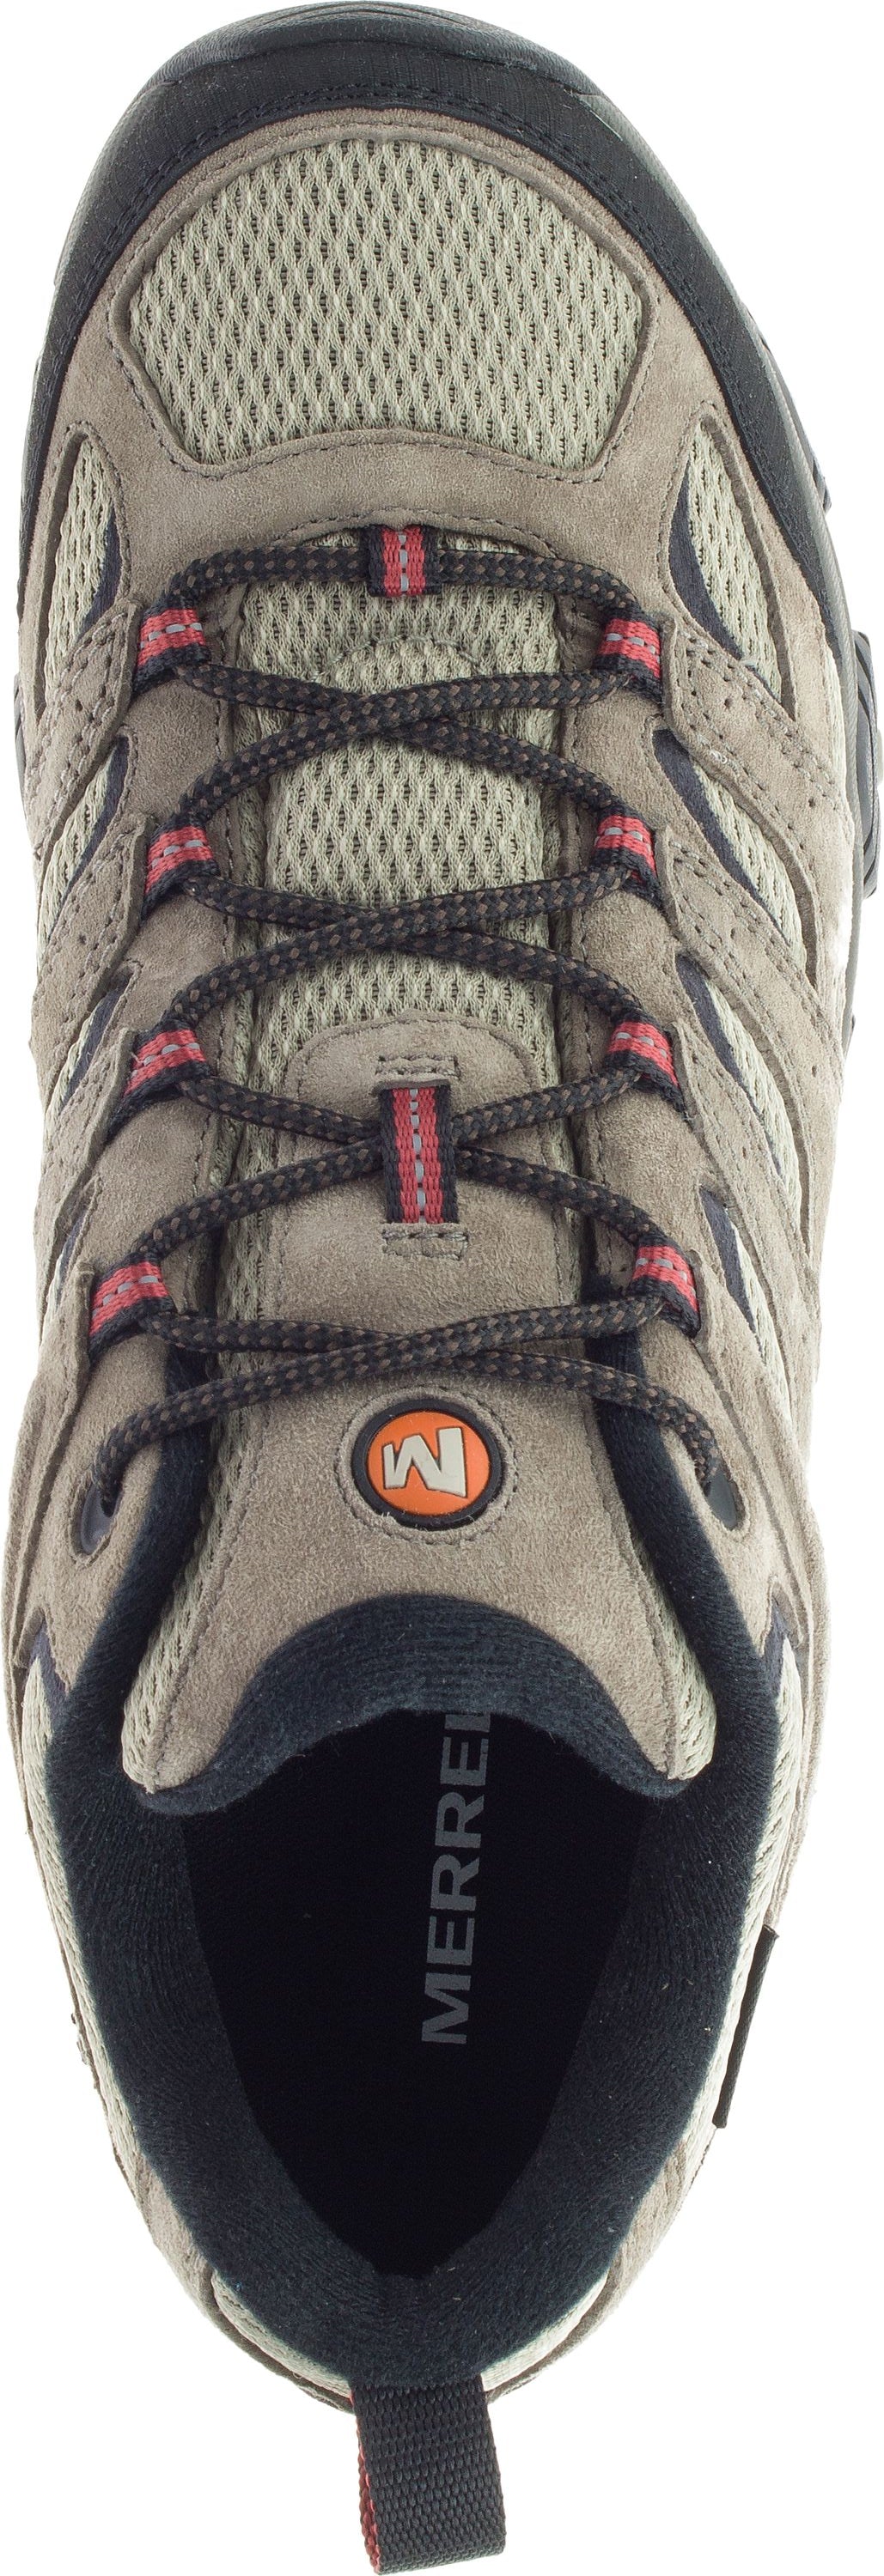 Merrell Shoes Moab 3 Waterproof Dark Brown